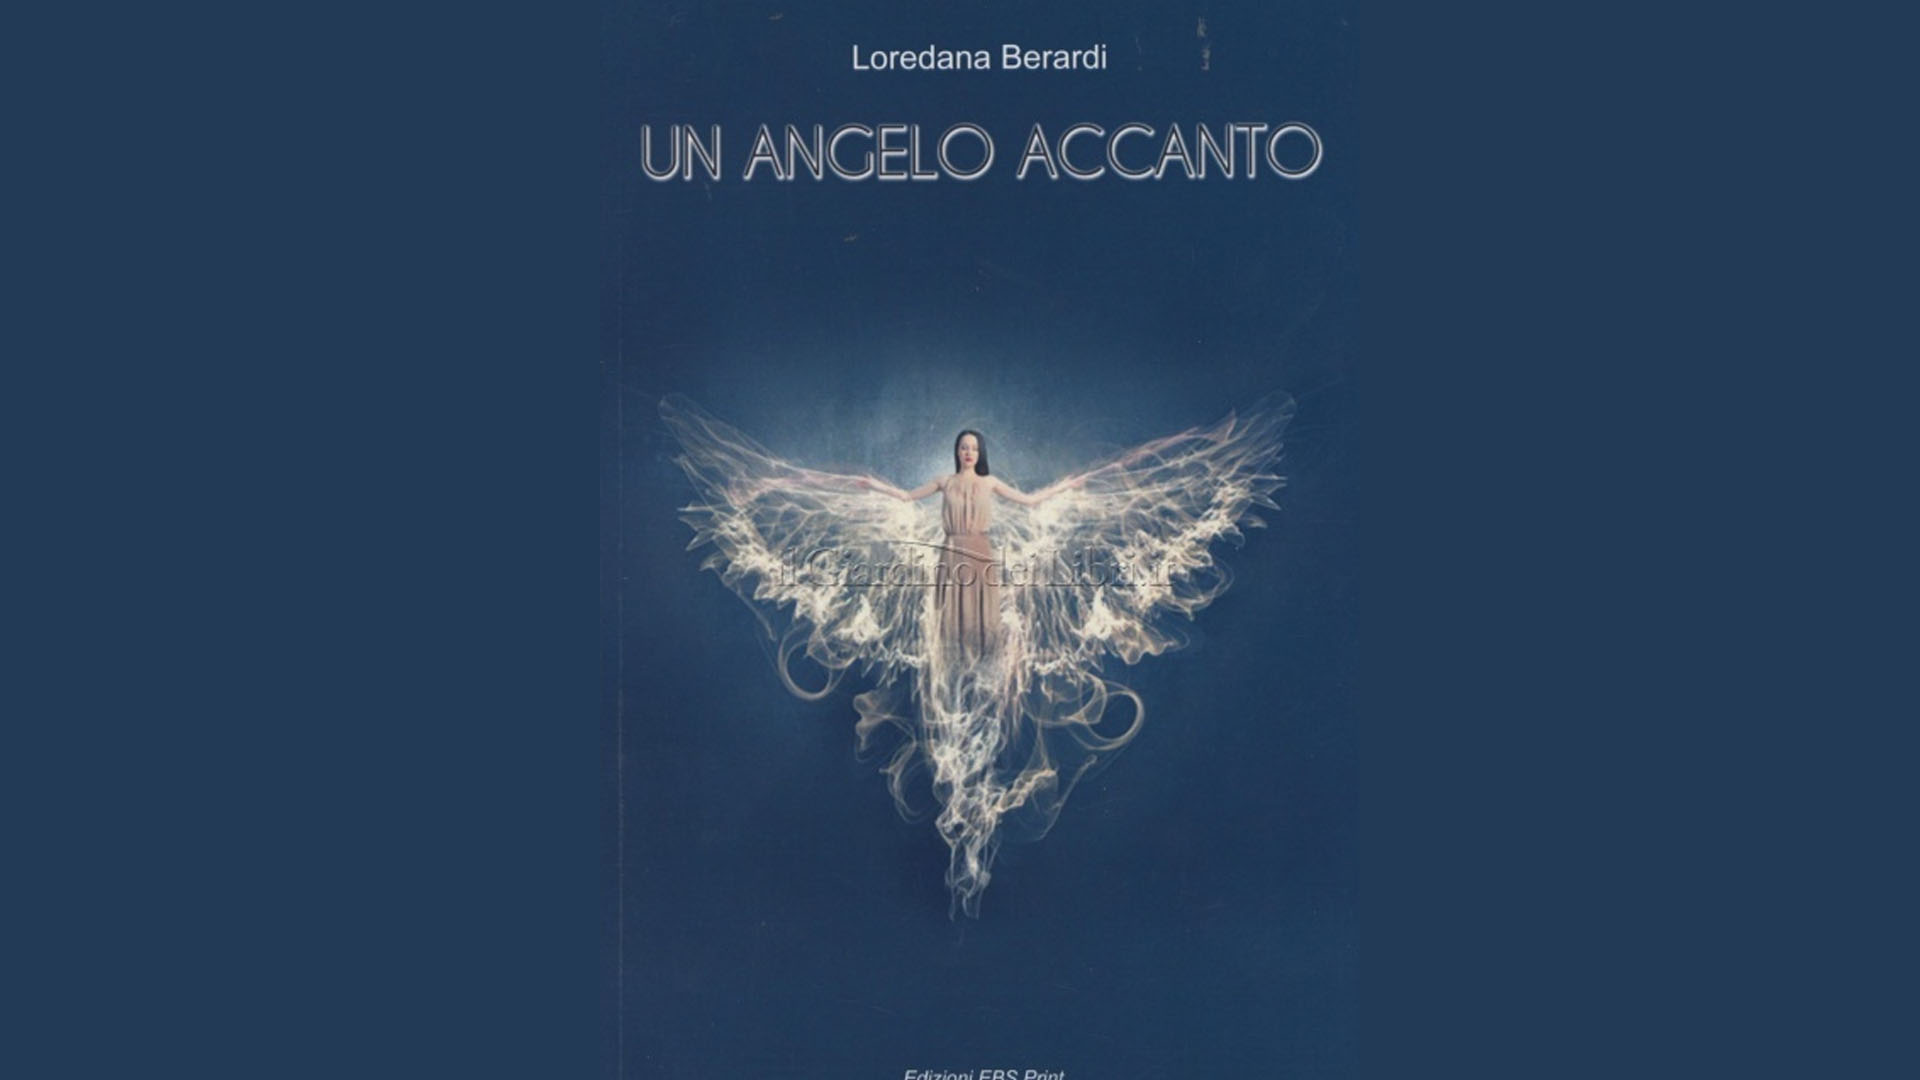 Un angelo accanto, narra la magica esperienza che Loredana Berardi ha vissuto con gli Angeli.